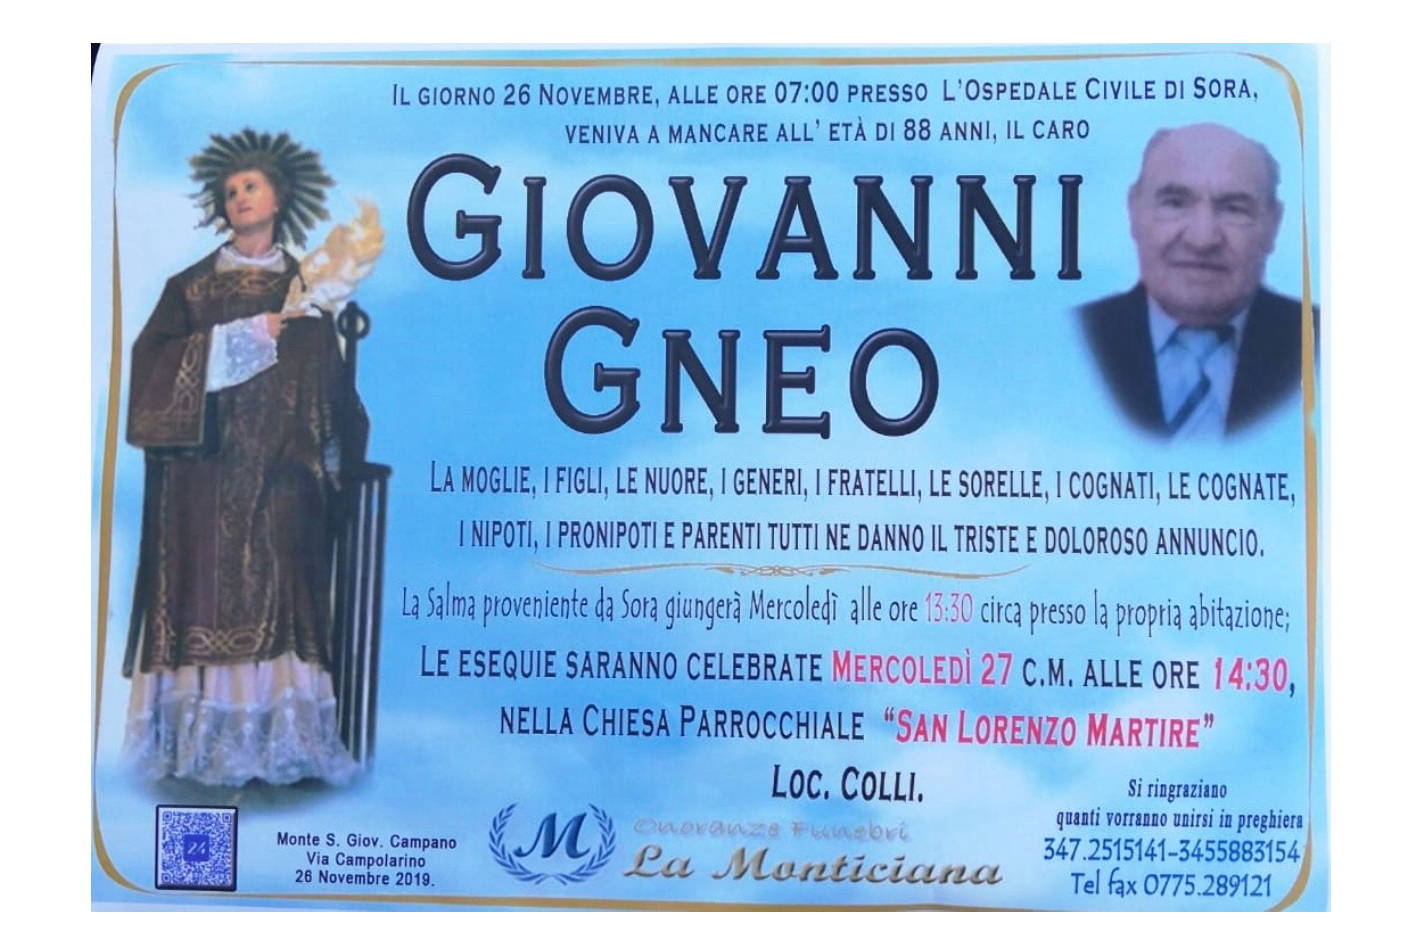 Giovanni Gneo